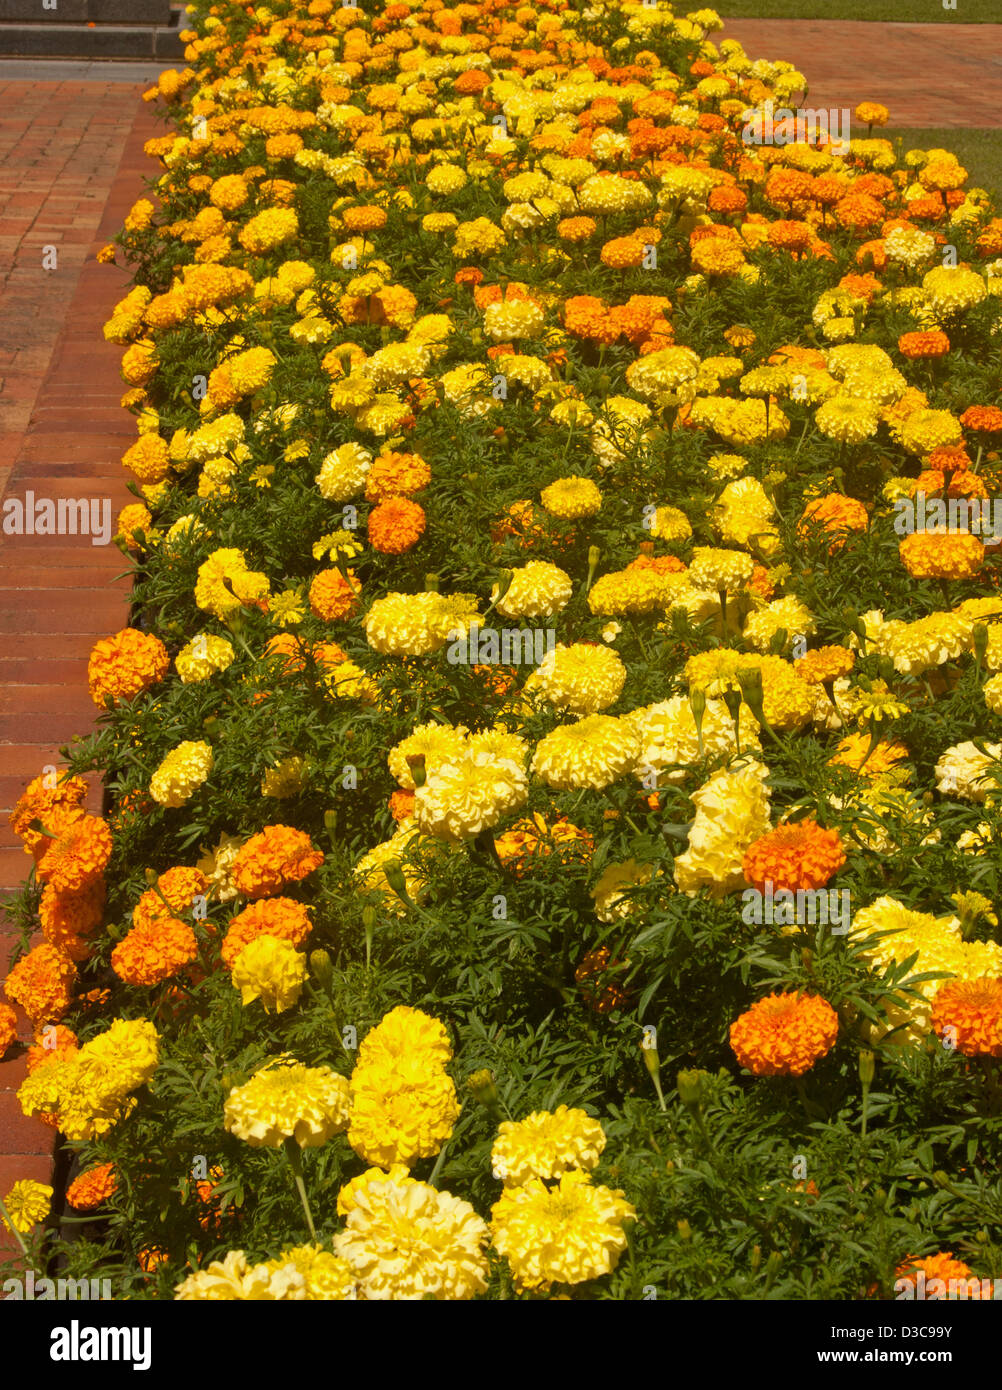 Letto giardino con fasce di colore giallo brillante e fiori d'arancio di African Le calendule - Tagetes erecta hybrid - popolare di piante annuali Foto Stock